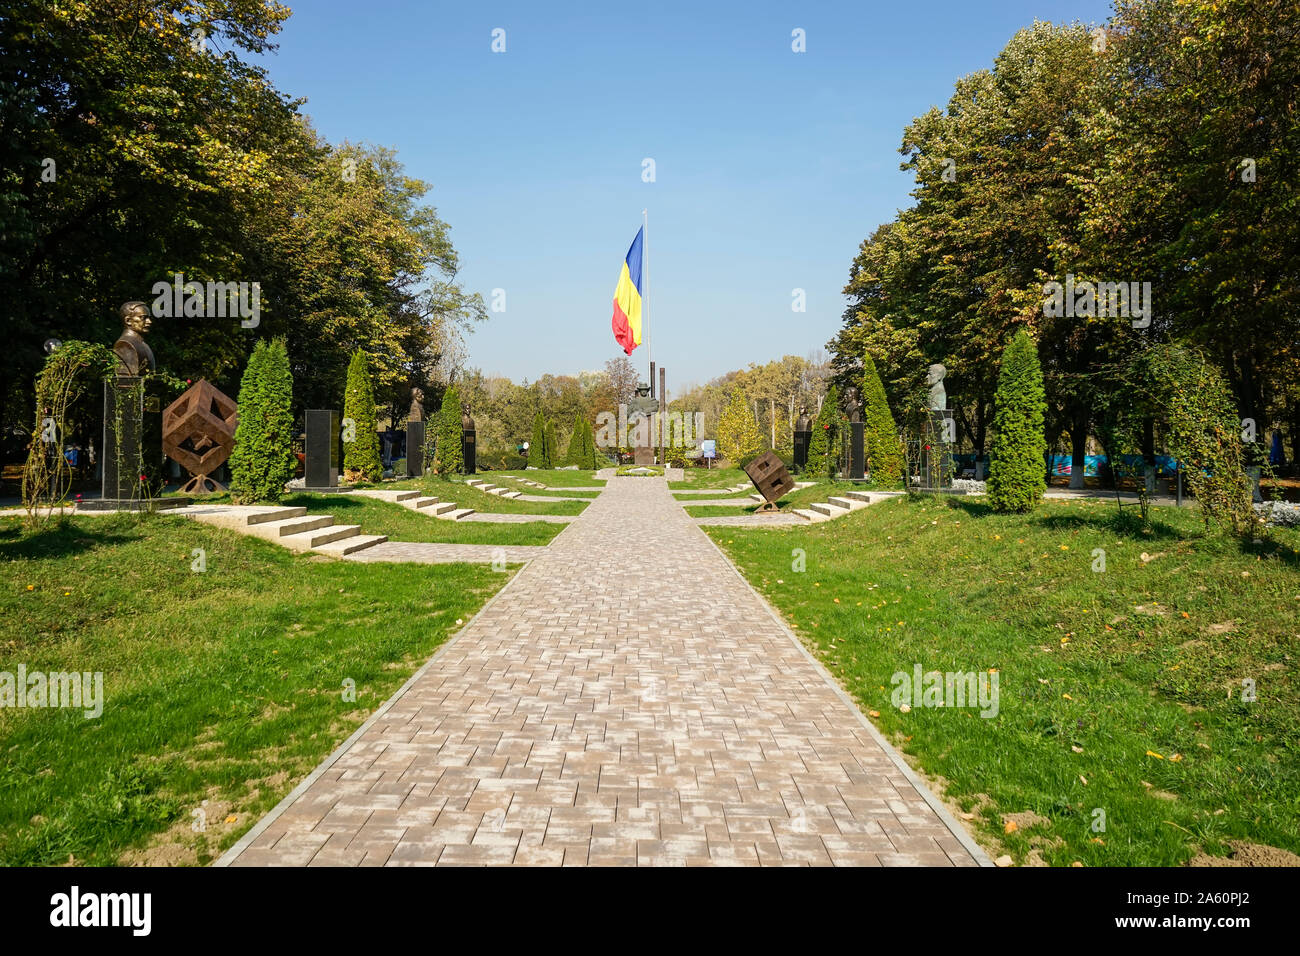 Callejón con las estatuas conmemorativas de la literatura rumana personalidades y la bandera rumana en el fondo de Constantin Stere Park , Ploiesti Foto de stock